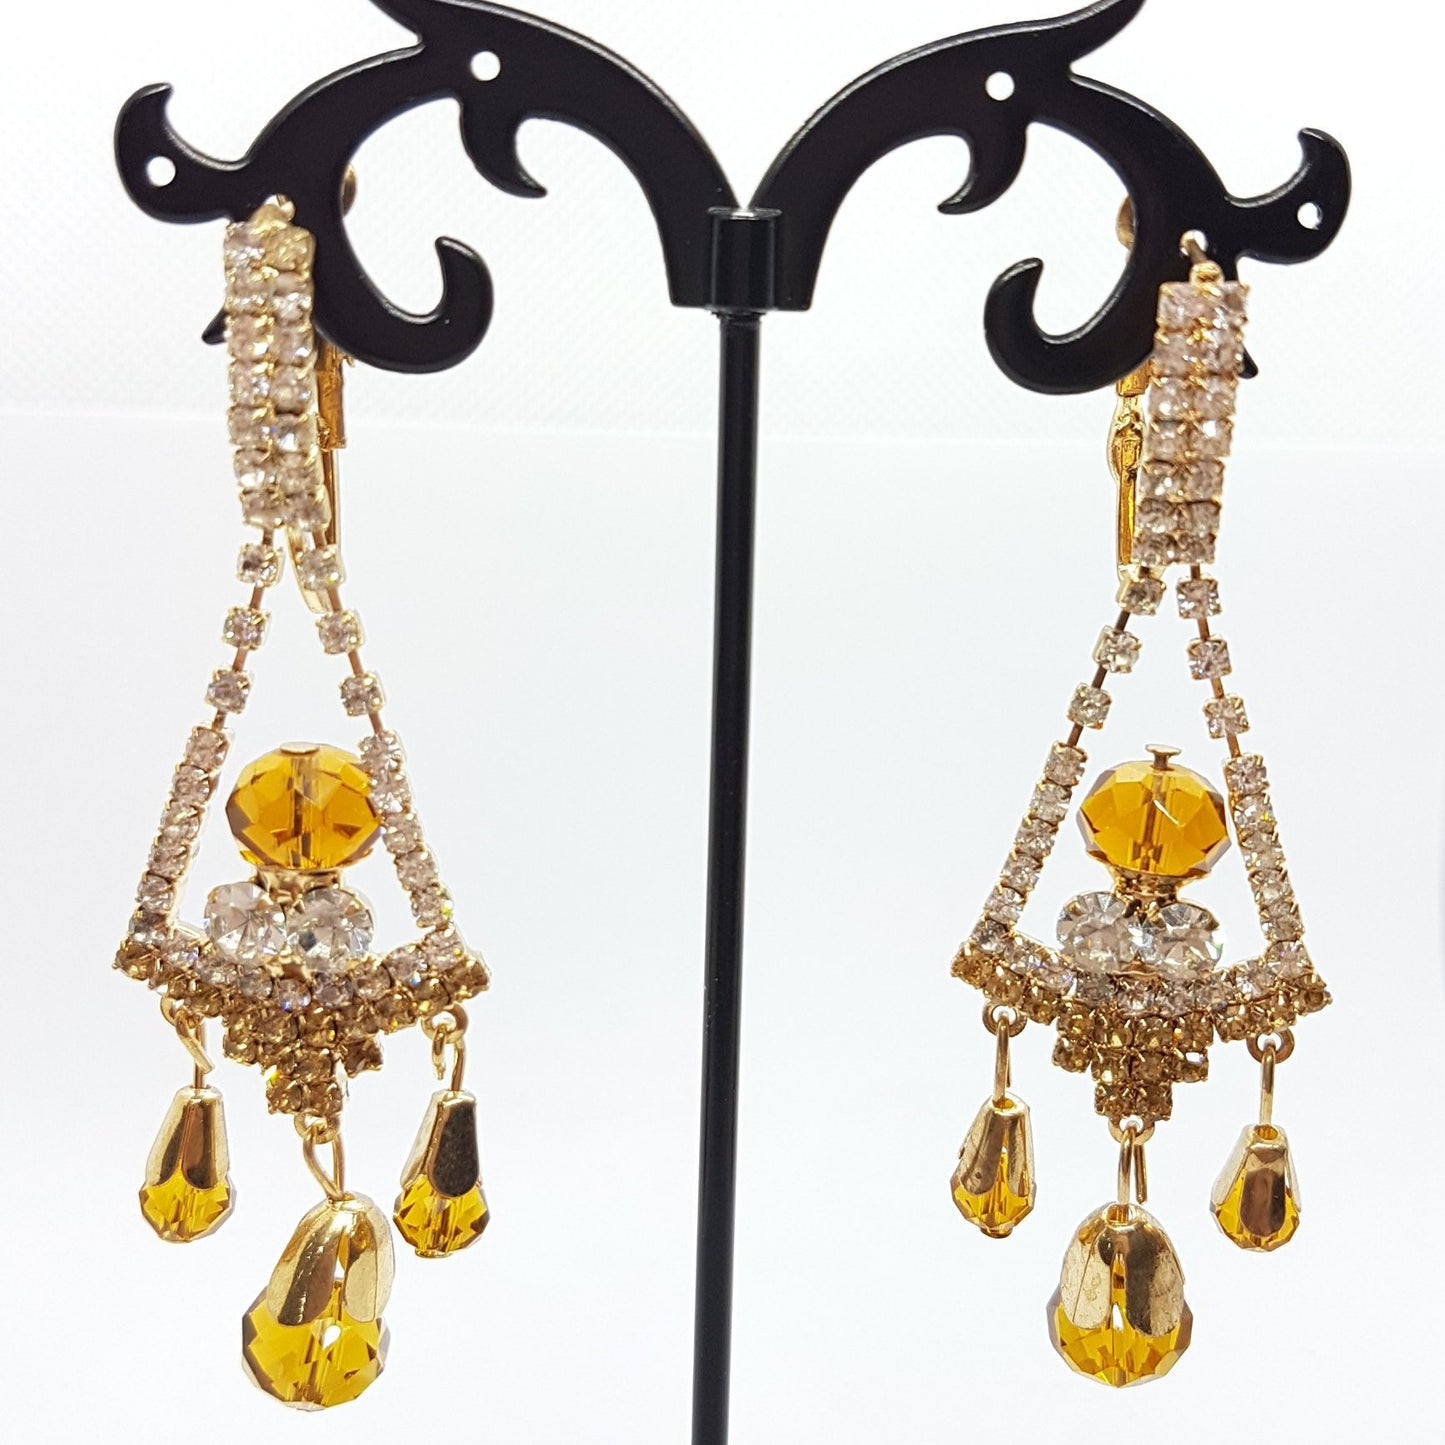 Long Golden Rhinestone Earrings